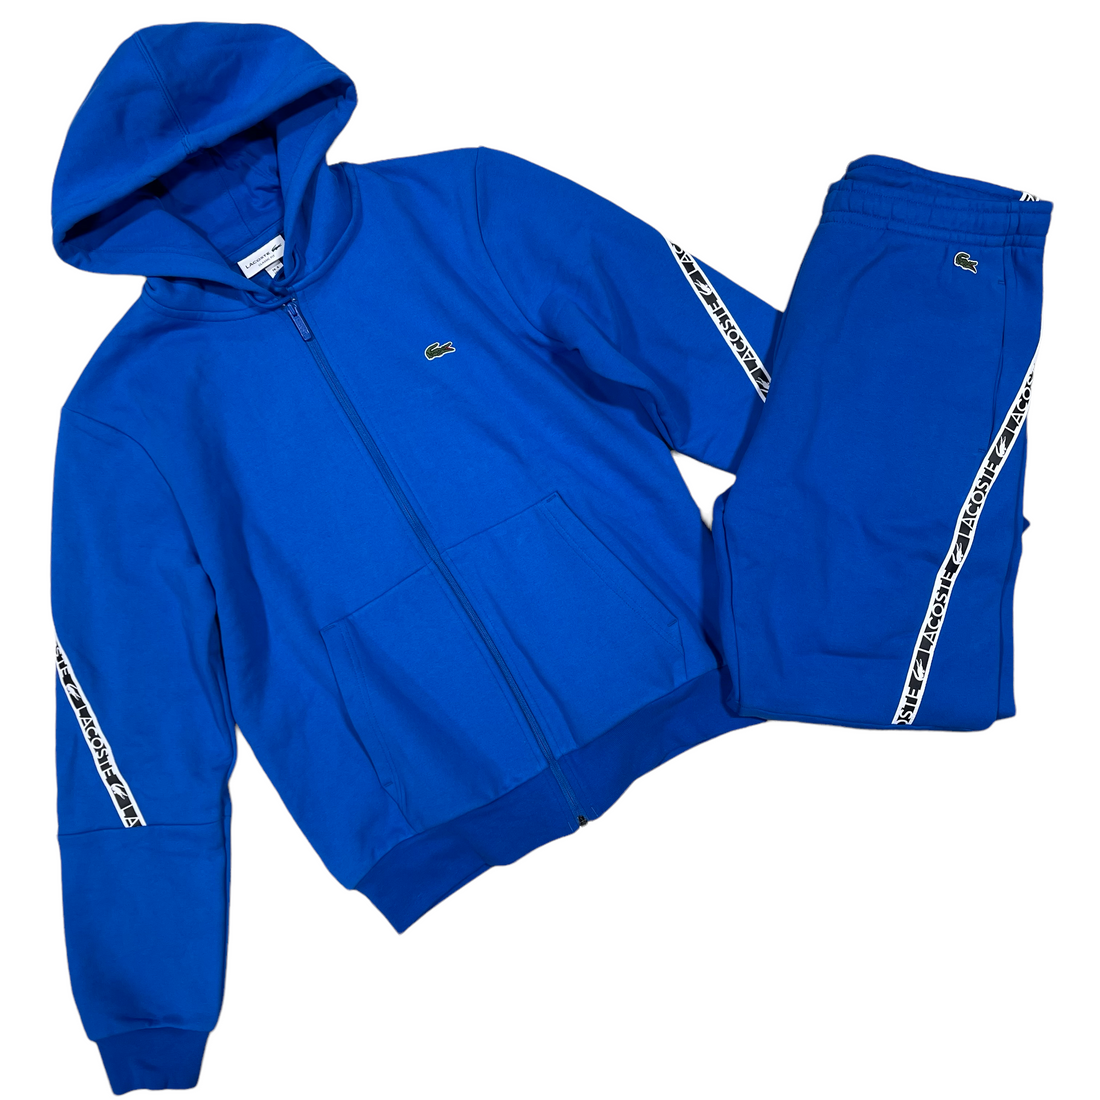 Føderale et eller andet sted Indsigt Lacoste Sport Jogging Suit – Thredz Clothing Nashville